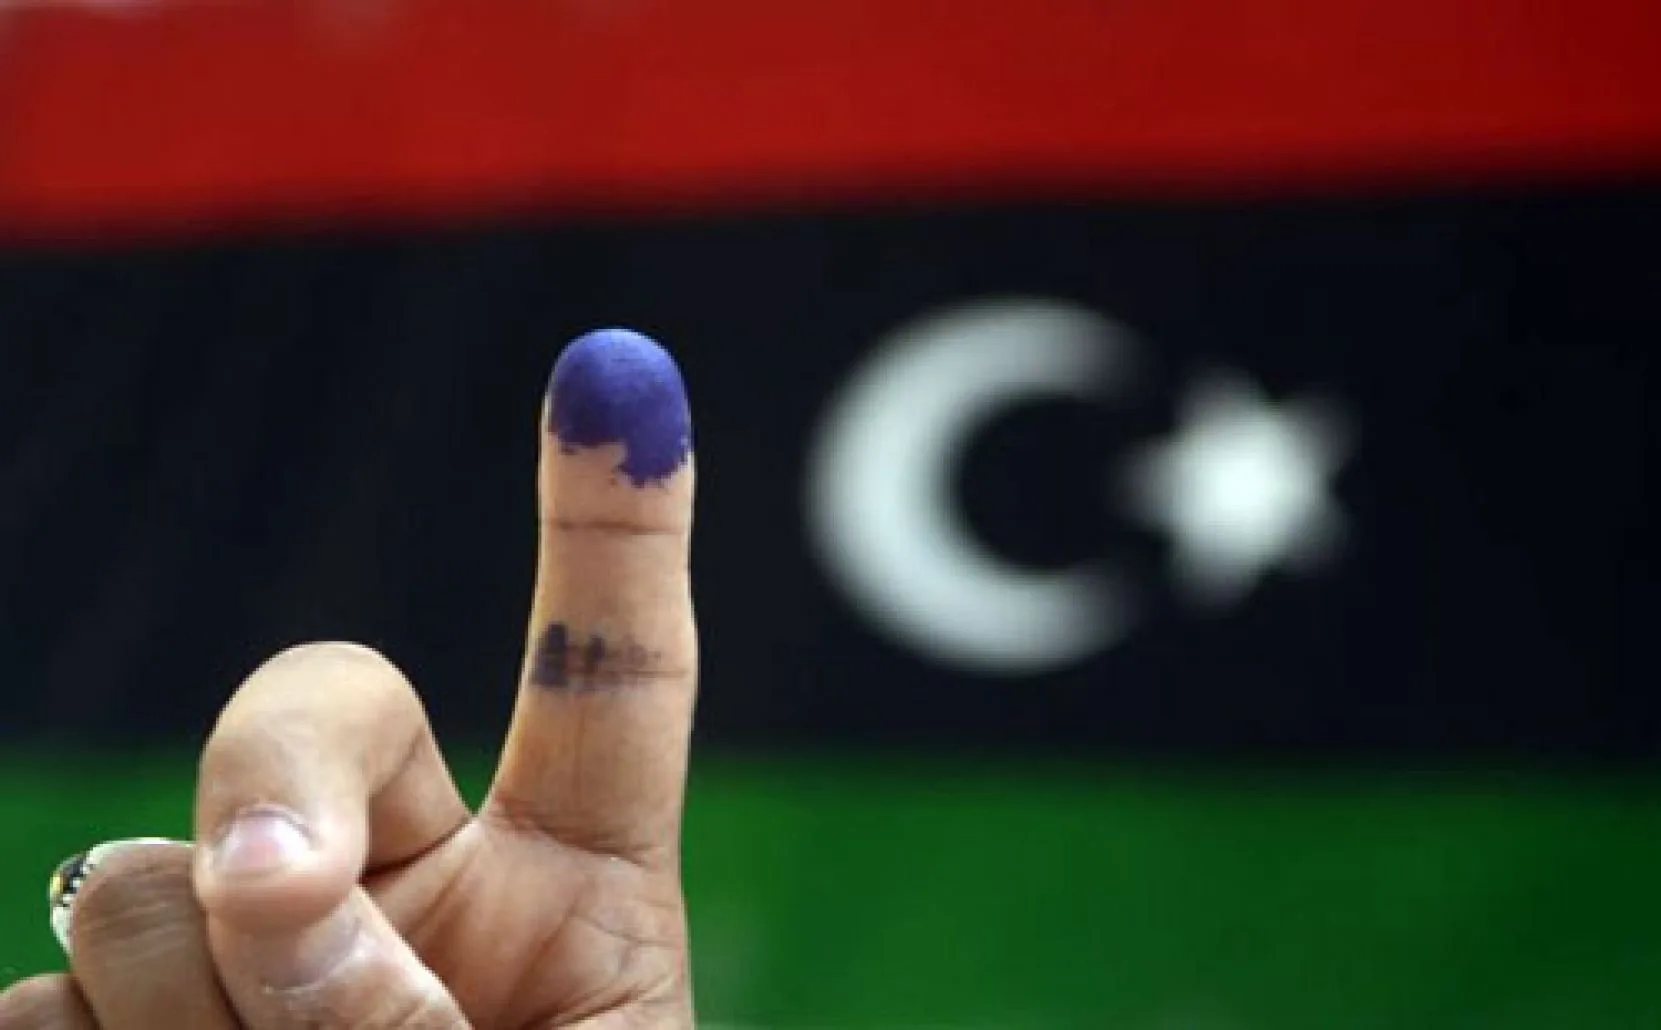 من المقرر اجراء الانتخابات الرئاسية الليبية يوم 24 ديسمبر الحالي